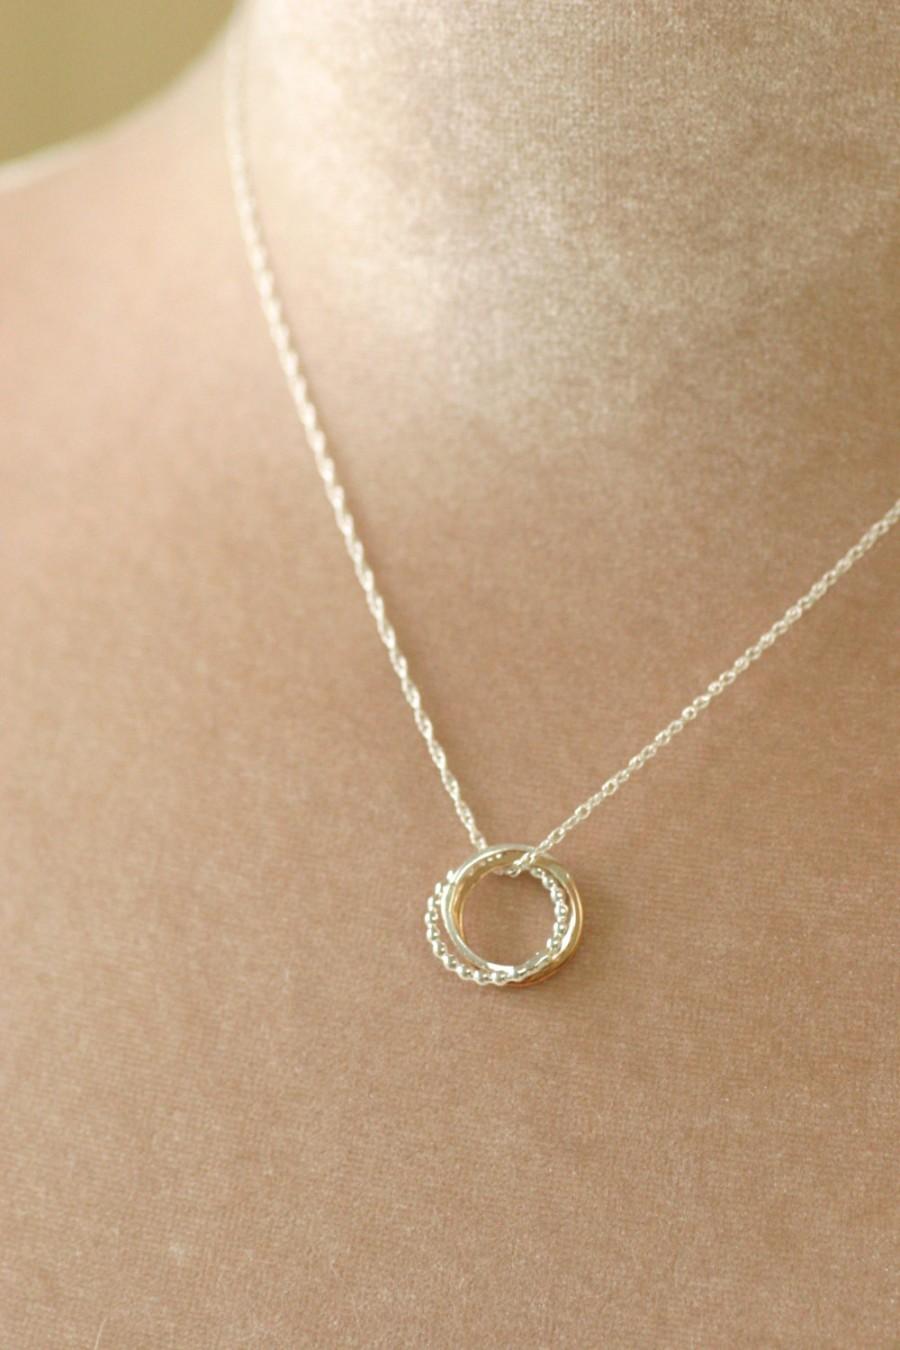 زفاف - Three ring necklace, bridesmaid necklace, three sisters necklace, sister jewelry, gift for bridesmaid - Lilia